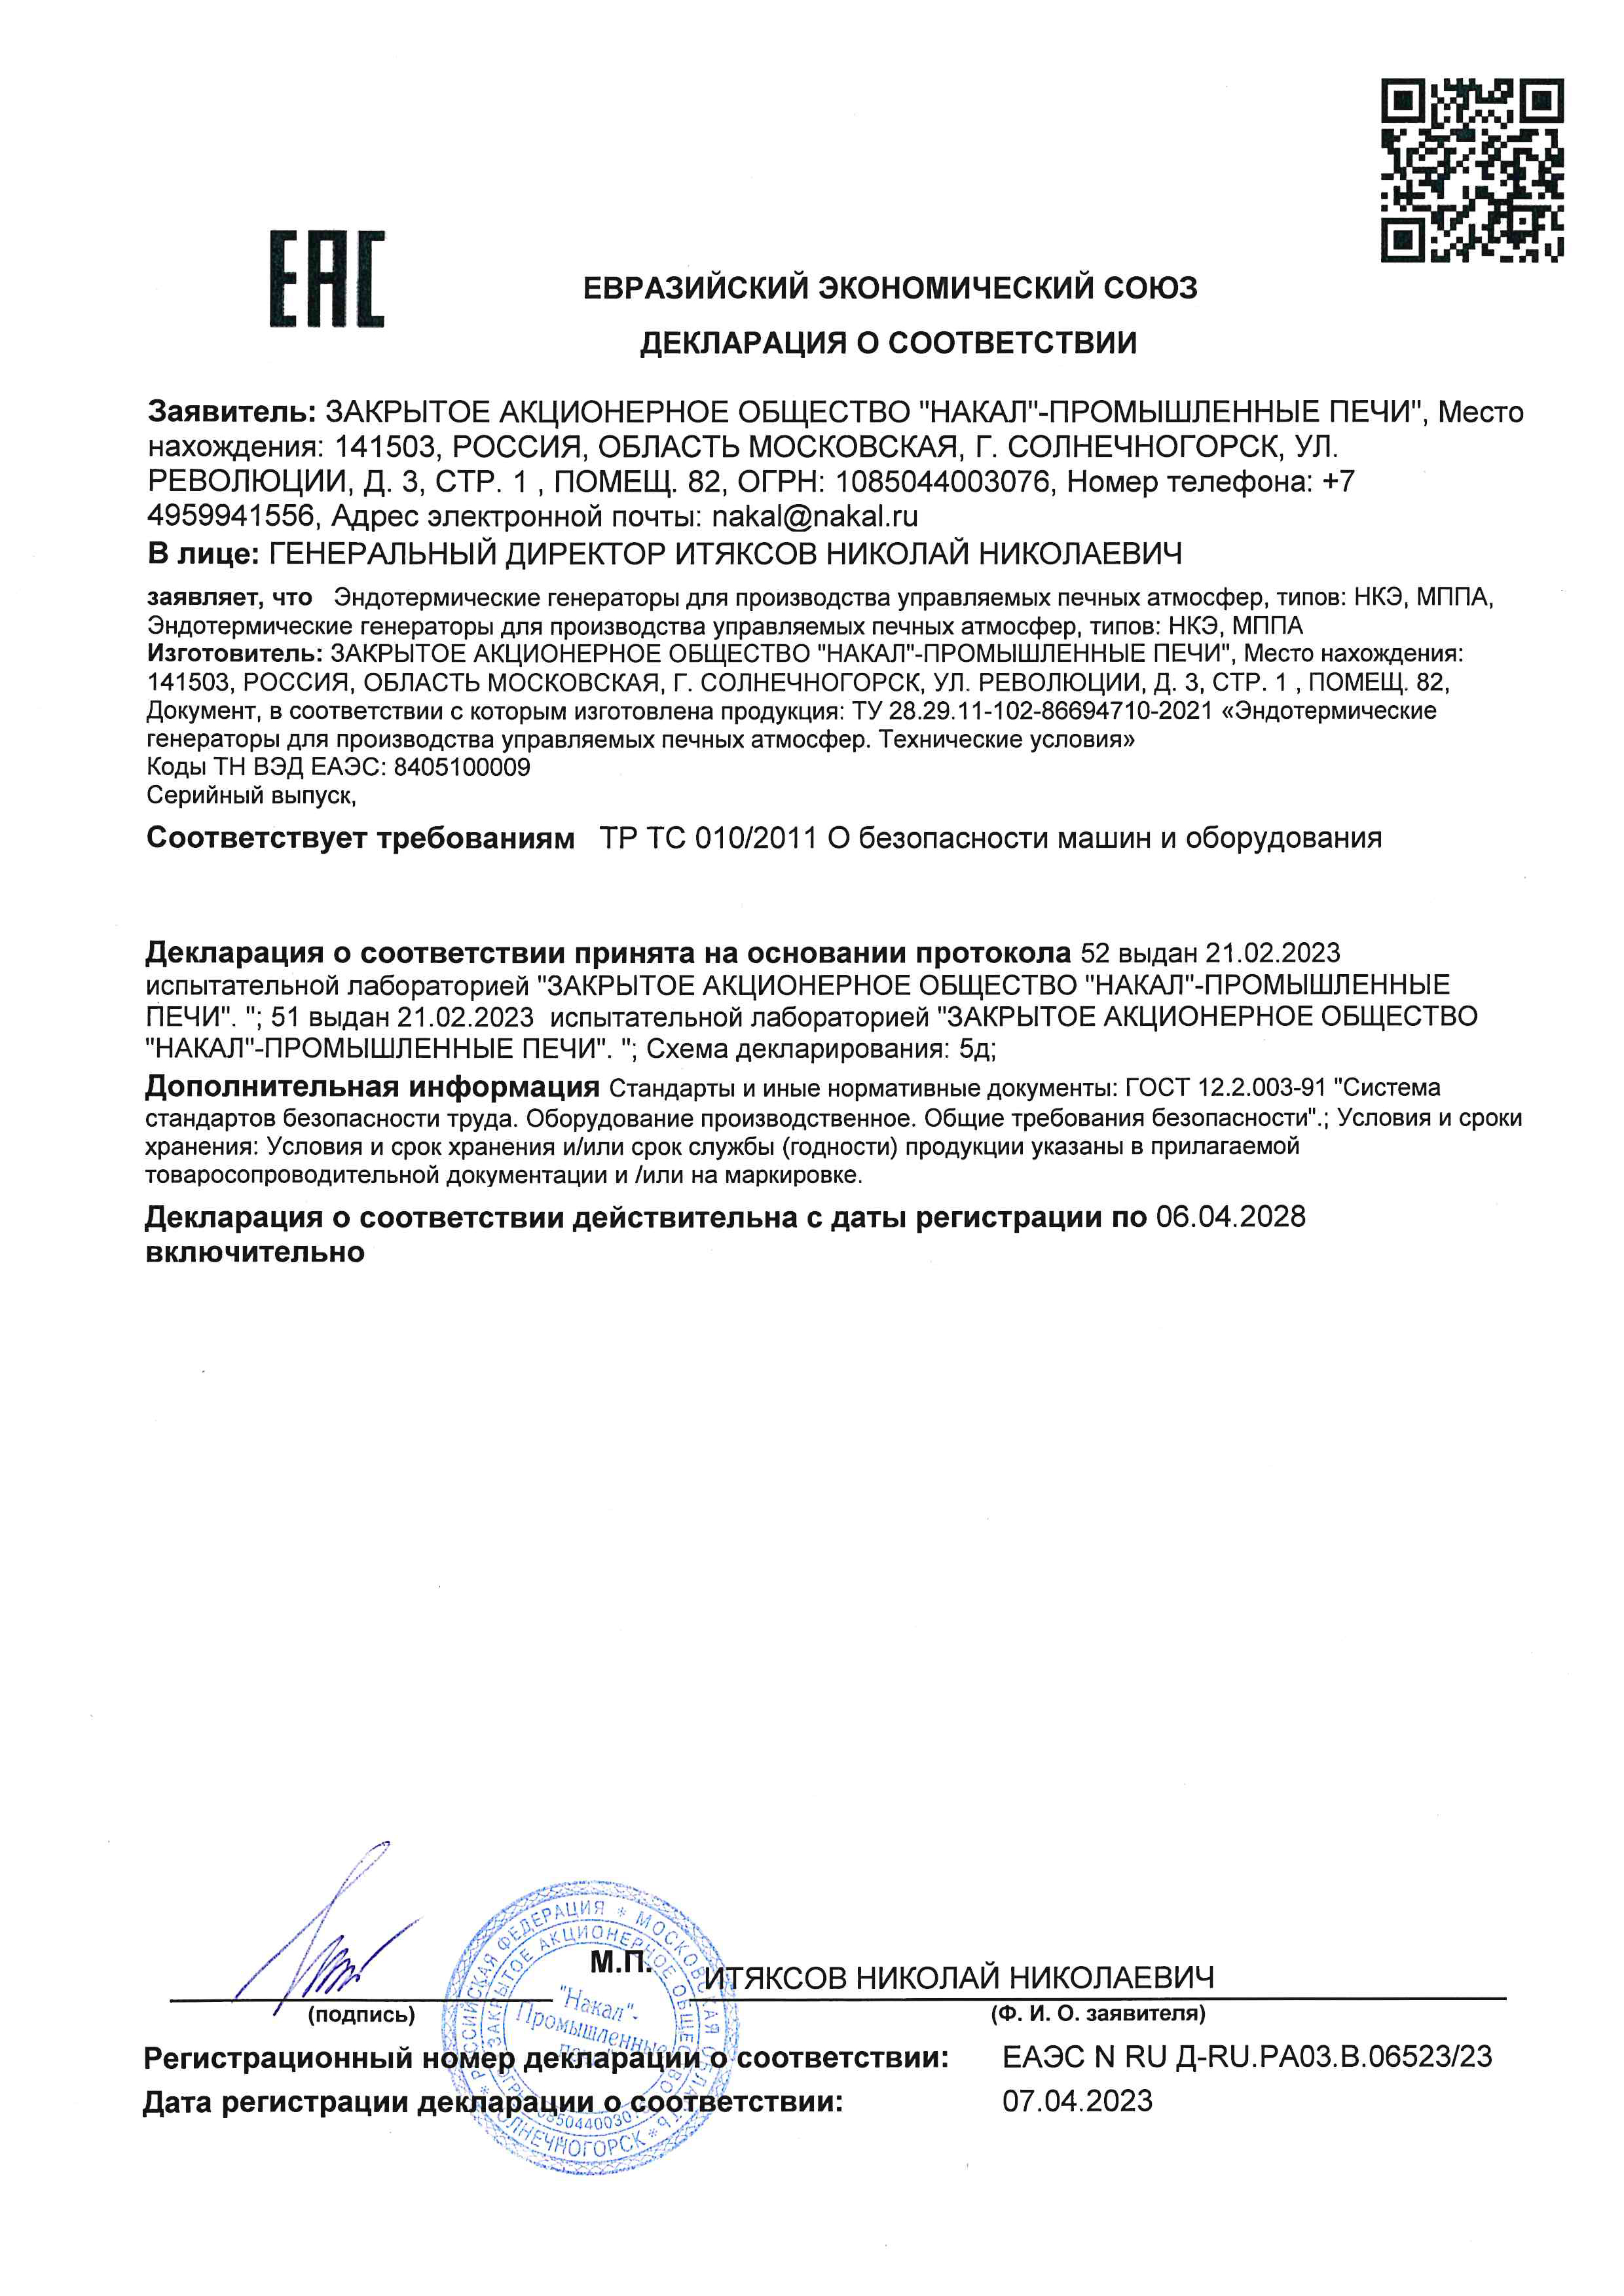 Сертификат соответствия на модули МППА и Эндотермические генераторы НКЭ